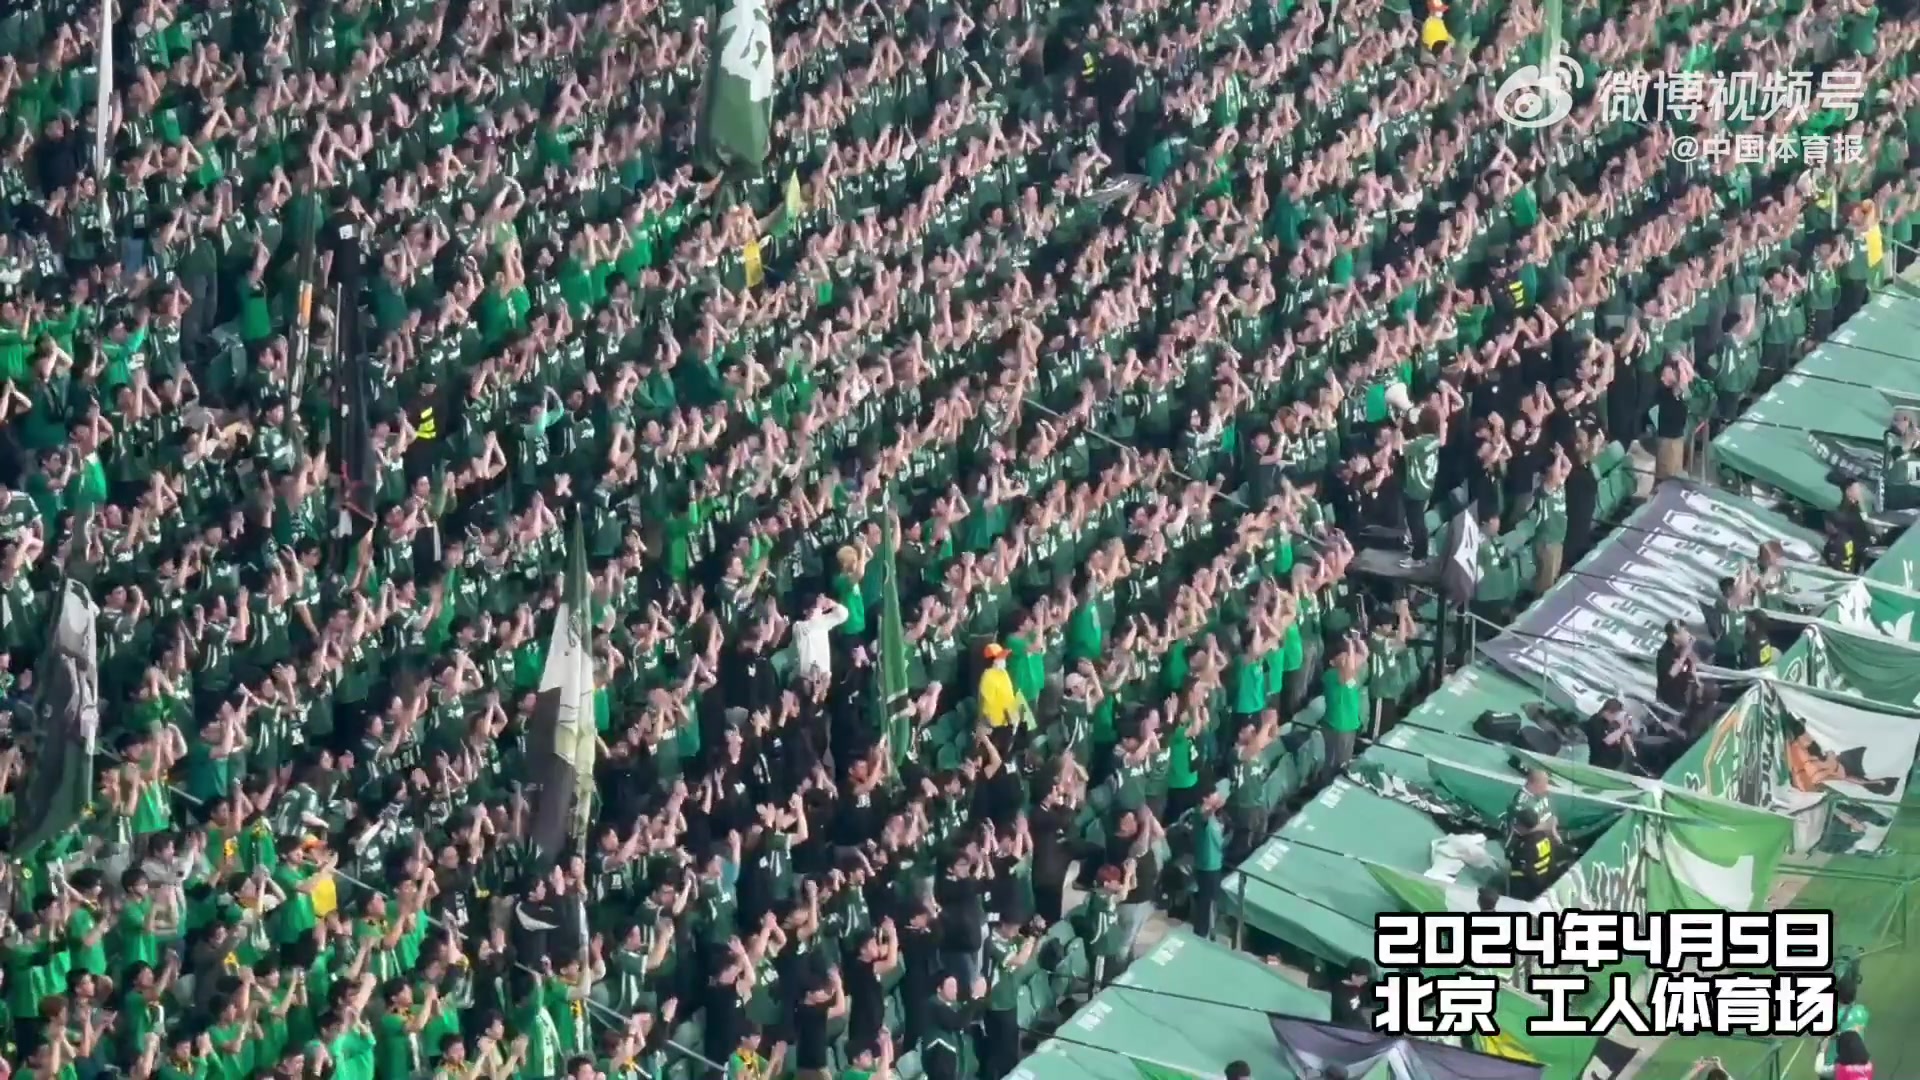 中国体育报制作微纪录片纪念杨雪：足球成为凝聚所有人最好的方式